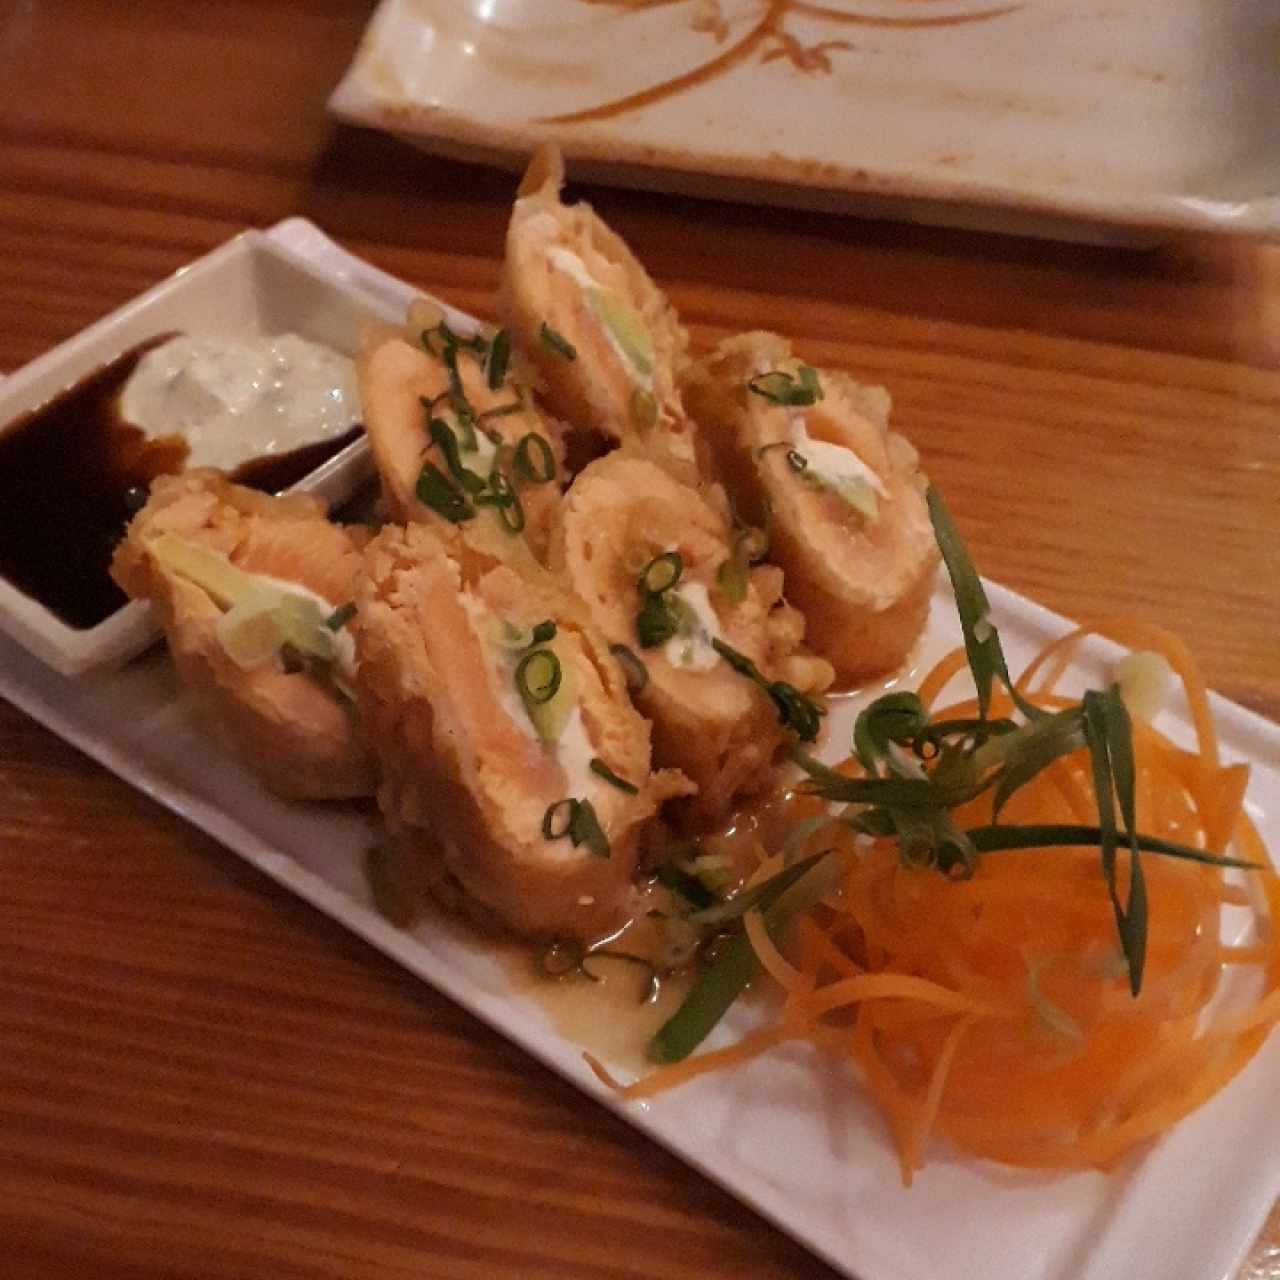 Entradas - Salmón tempura